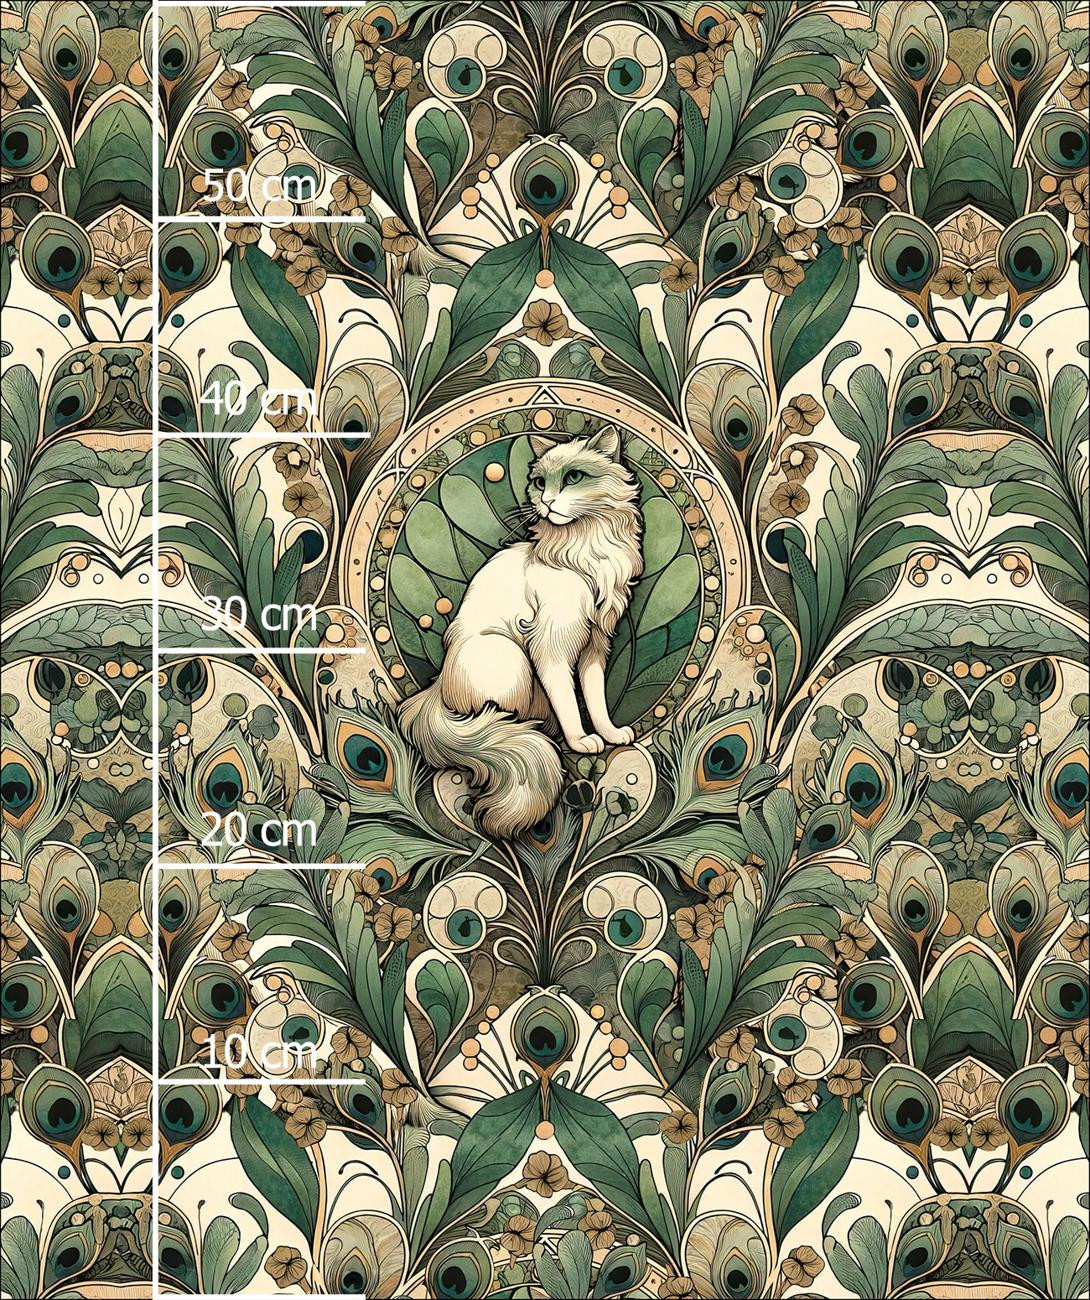 ART NOUVEAU CATS & FLOWERS PAT. 1 - panel (60cm x 50cm) Waterproof woven fabric